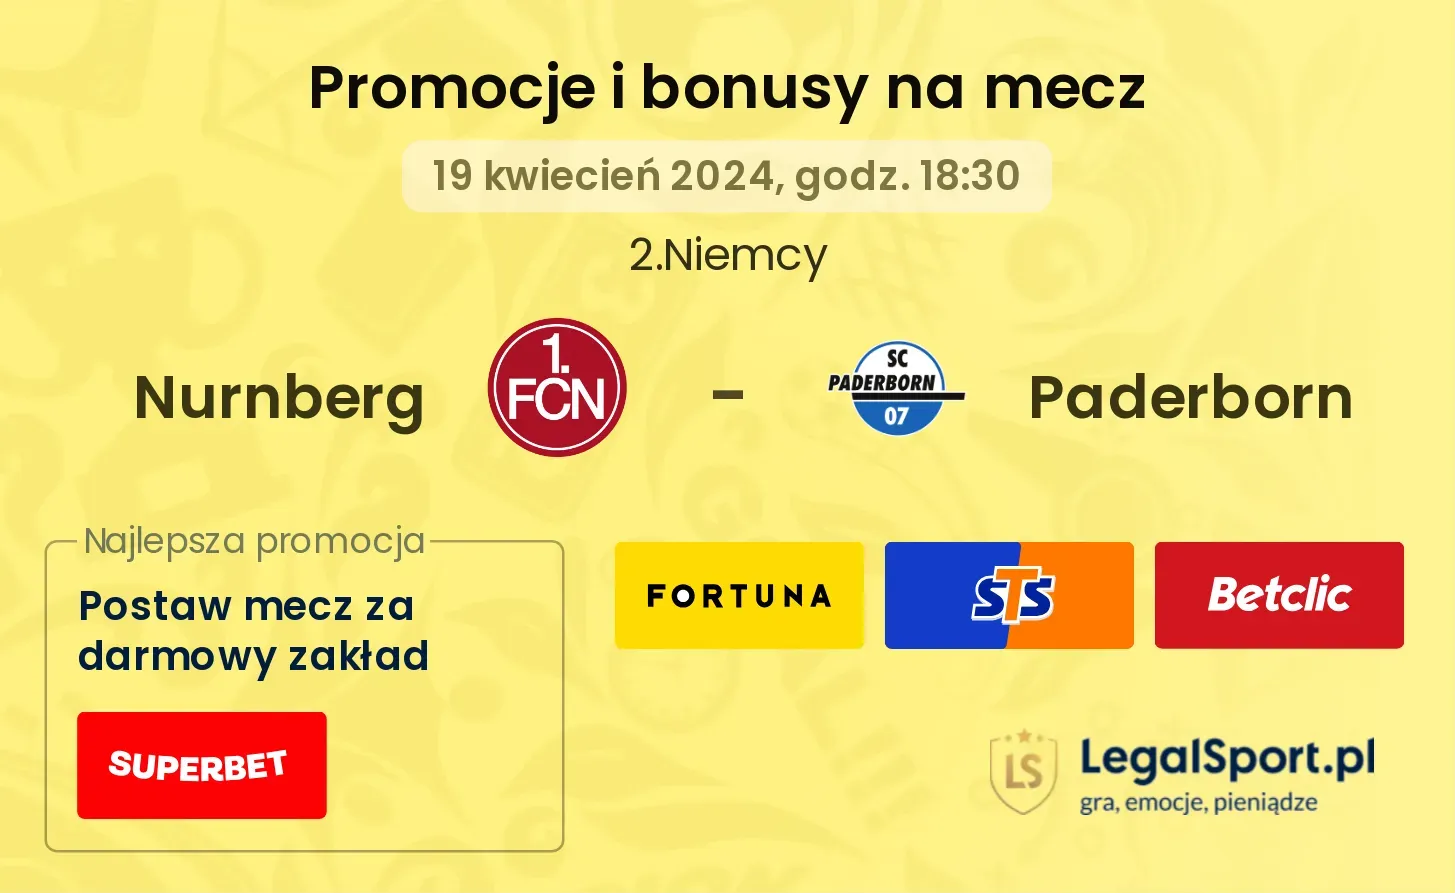 Nurnberg - Paderborn promocje bonusy na mecz